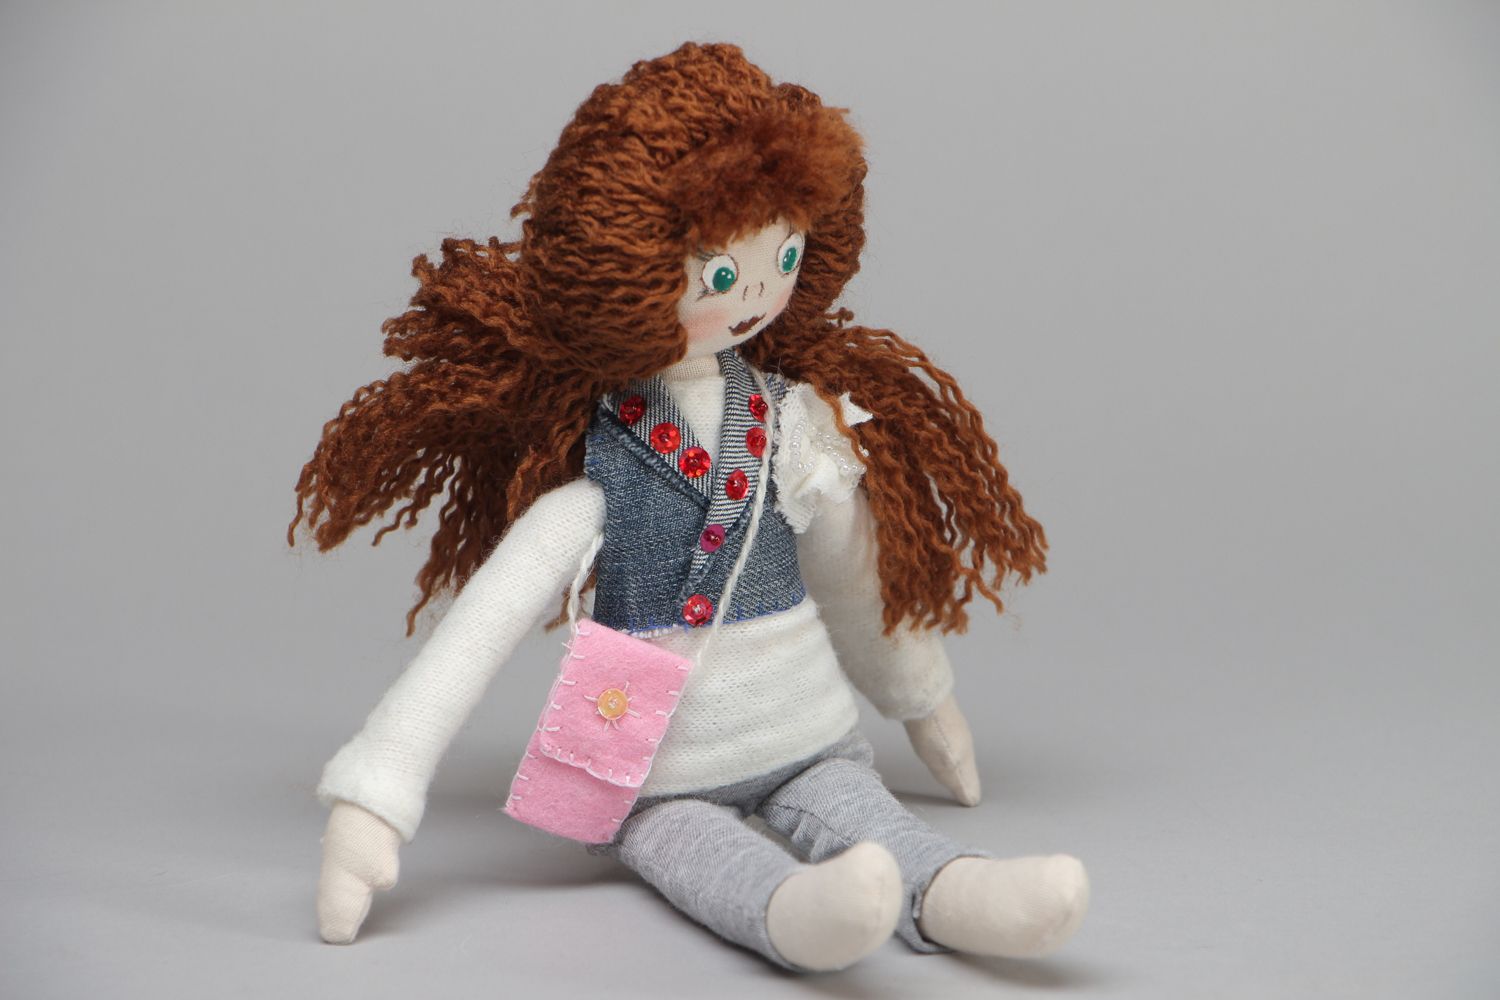 Textil Puppe aus Stoff mit lockigen Haaren Natalie foto 1